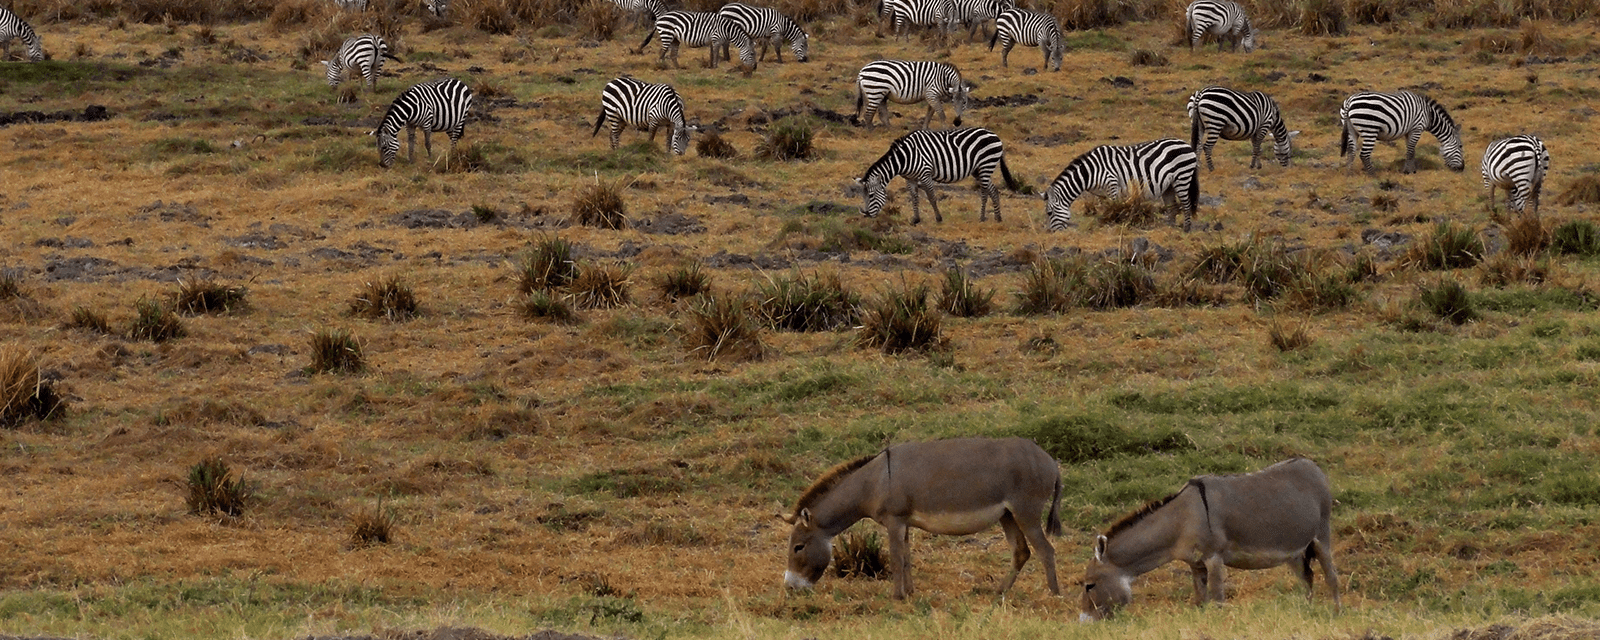 Zebras and donkeys grazing